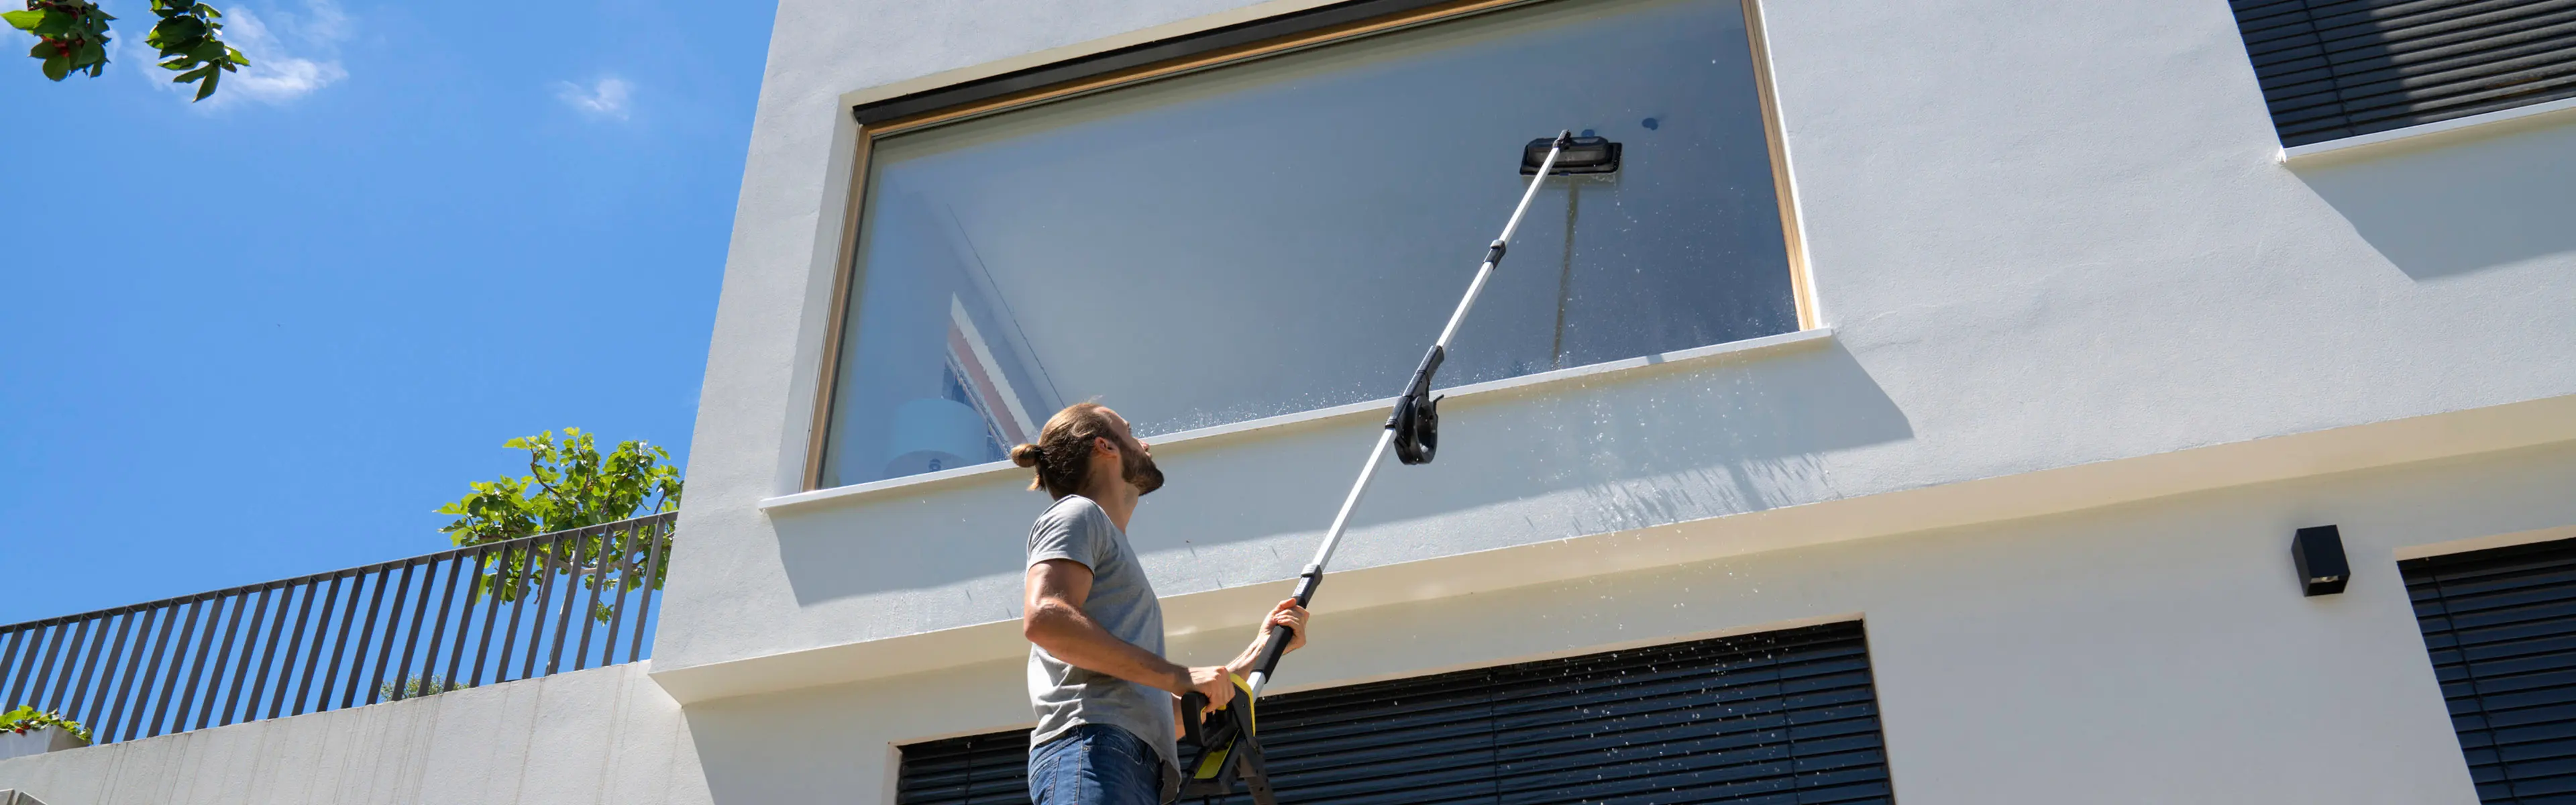 Mann som vasker vinduer ute med teleskoplanse og vindussett til høytrykkspyler.